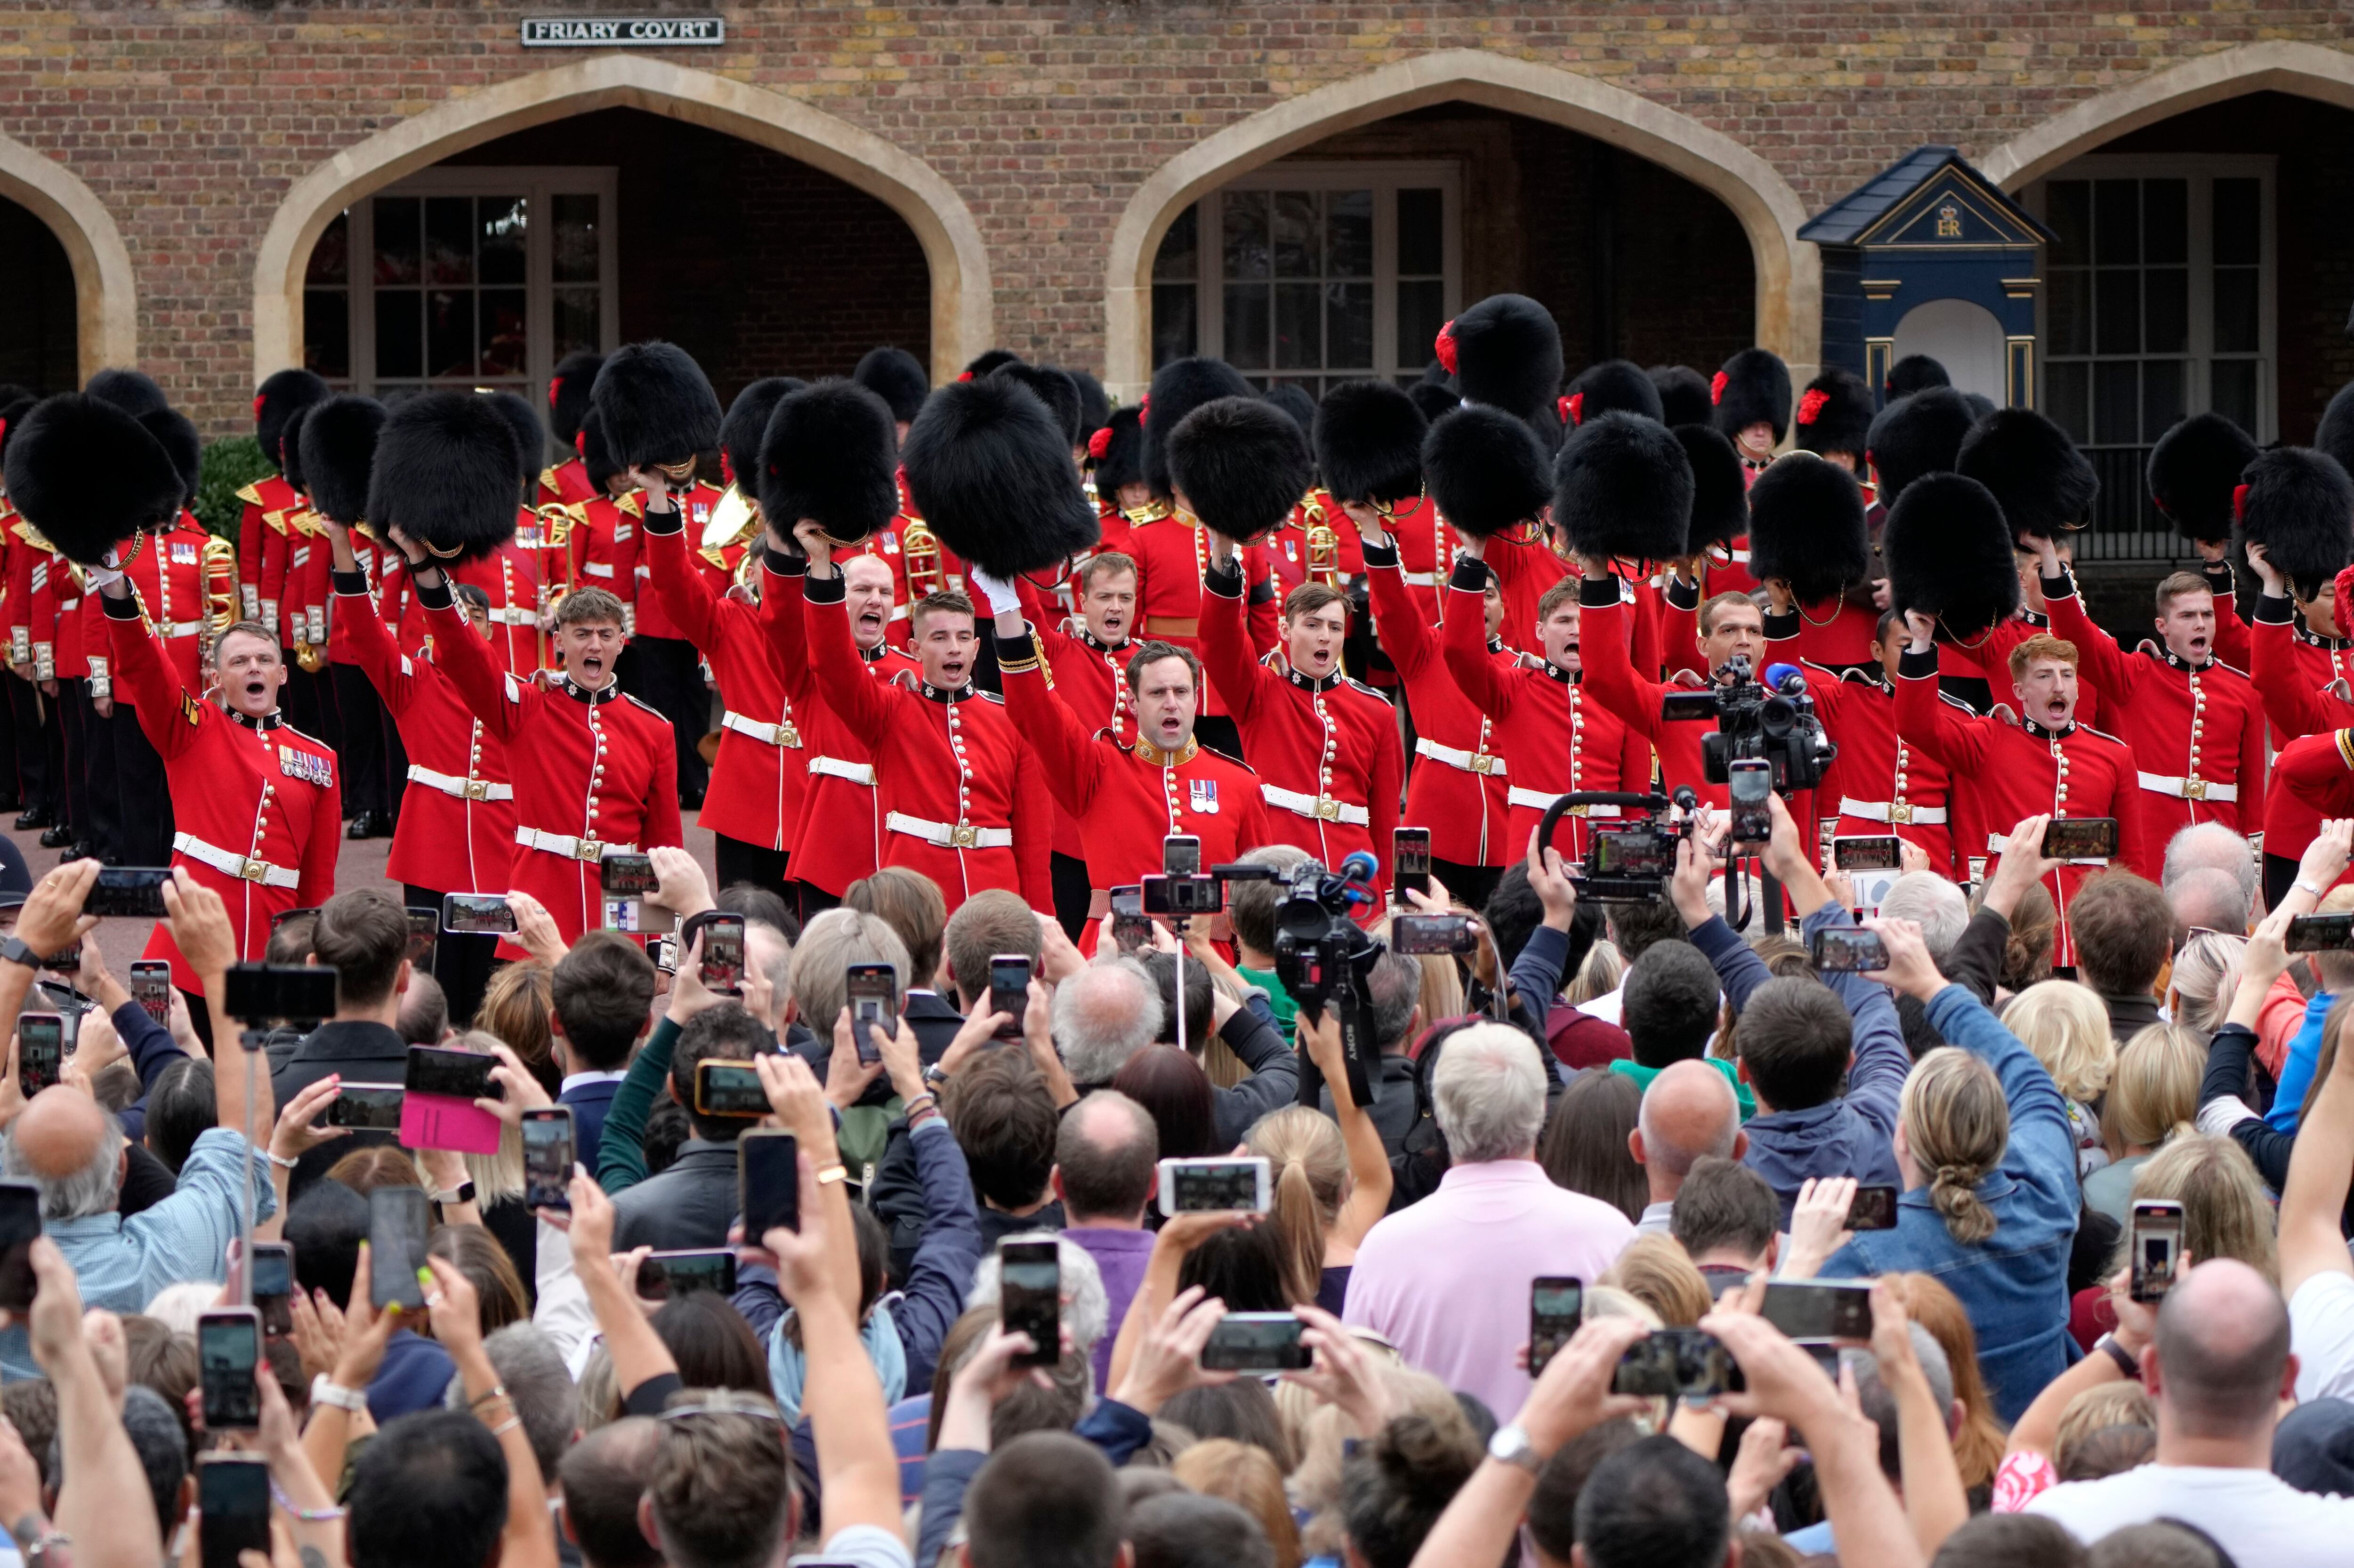 El público sigue en el exterior la ceremonia militar en el palacio de Saint James, tras el anuncio de la proclamación de Carlos III como nuevo rey de Inglaterra. 